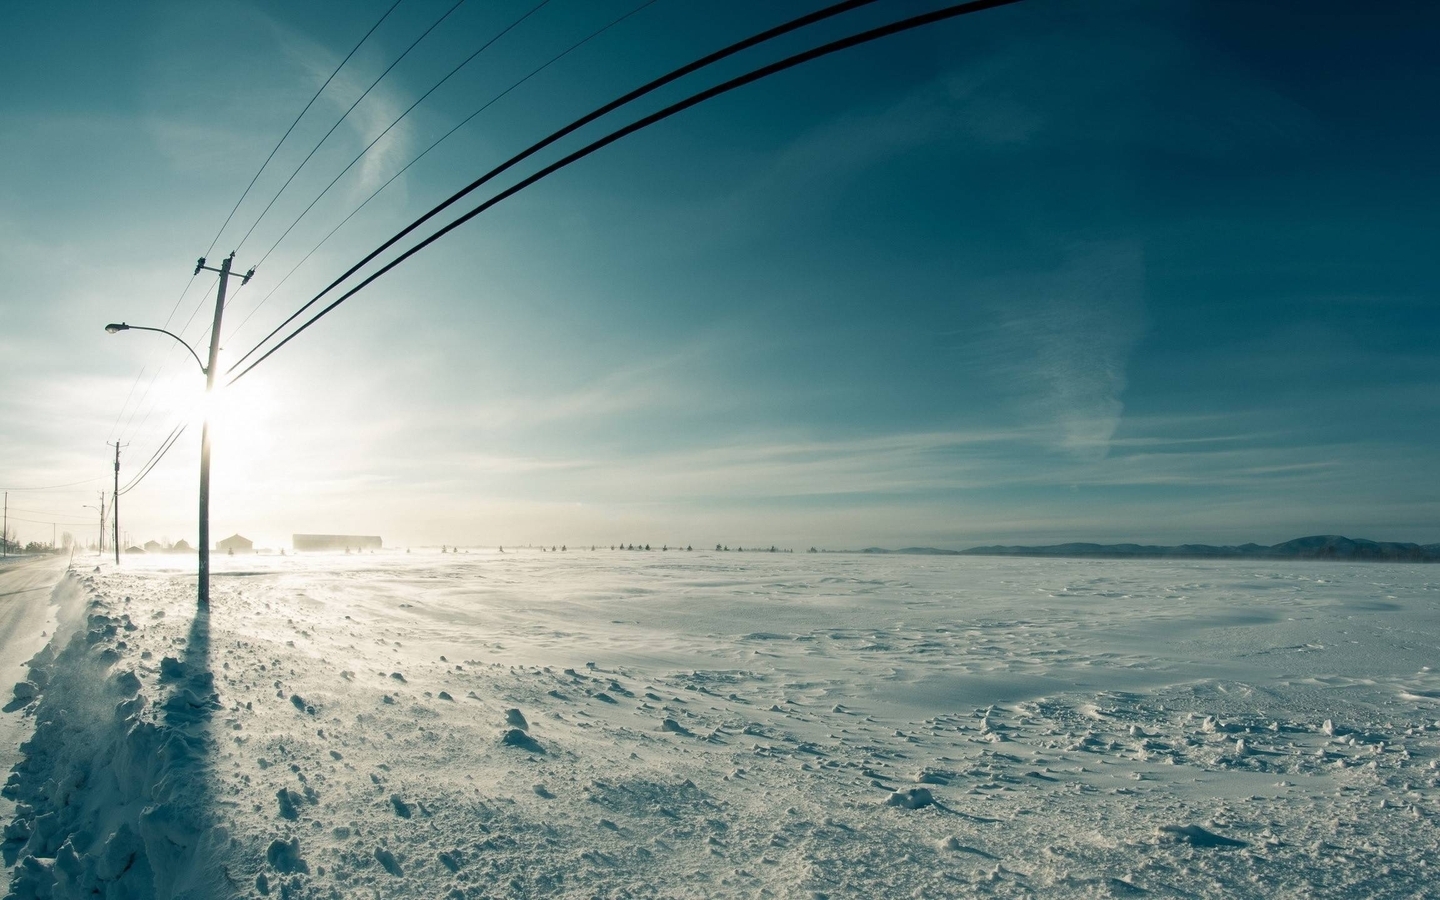 Картинка: Зима, небо, солнце, деревня, снег, дорога, опоры, линия, провода, электропередача, поле, горы